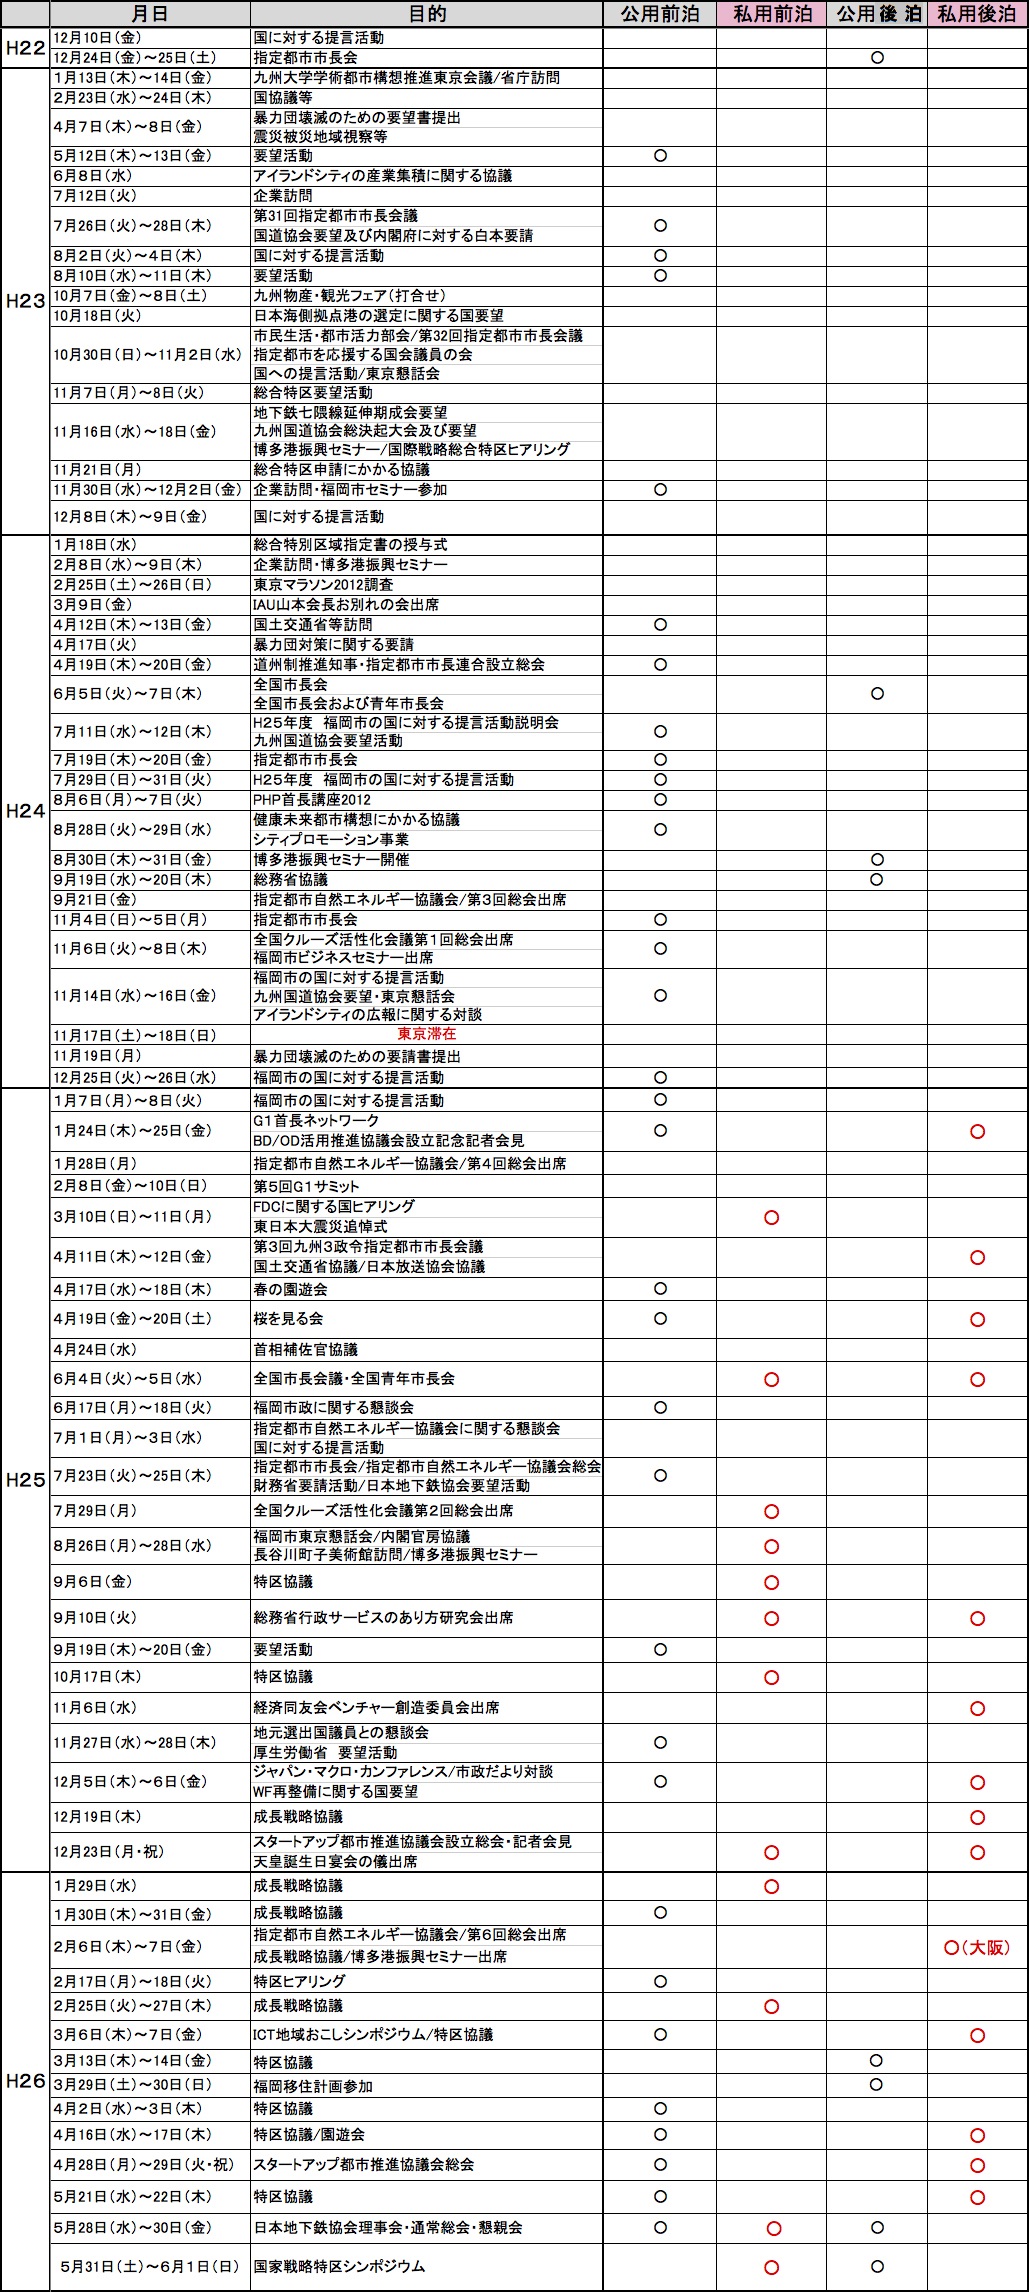 http://hunter-investigate.jp/news/2014/07/29/%E5%85%A8%E4%BD%93%E3%80%80%E8%A8%98%E4%BA%8B%E7%94%A8.jpg